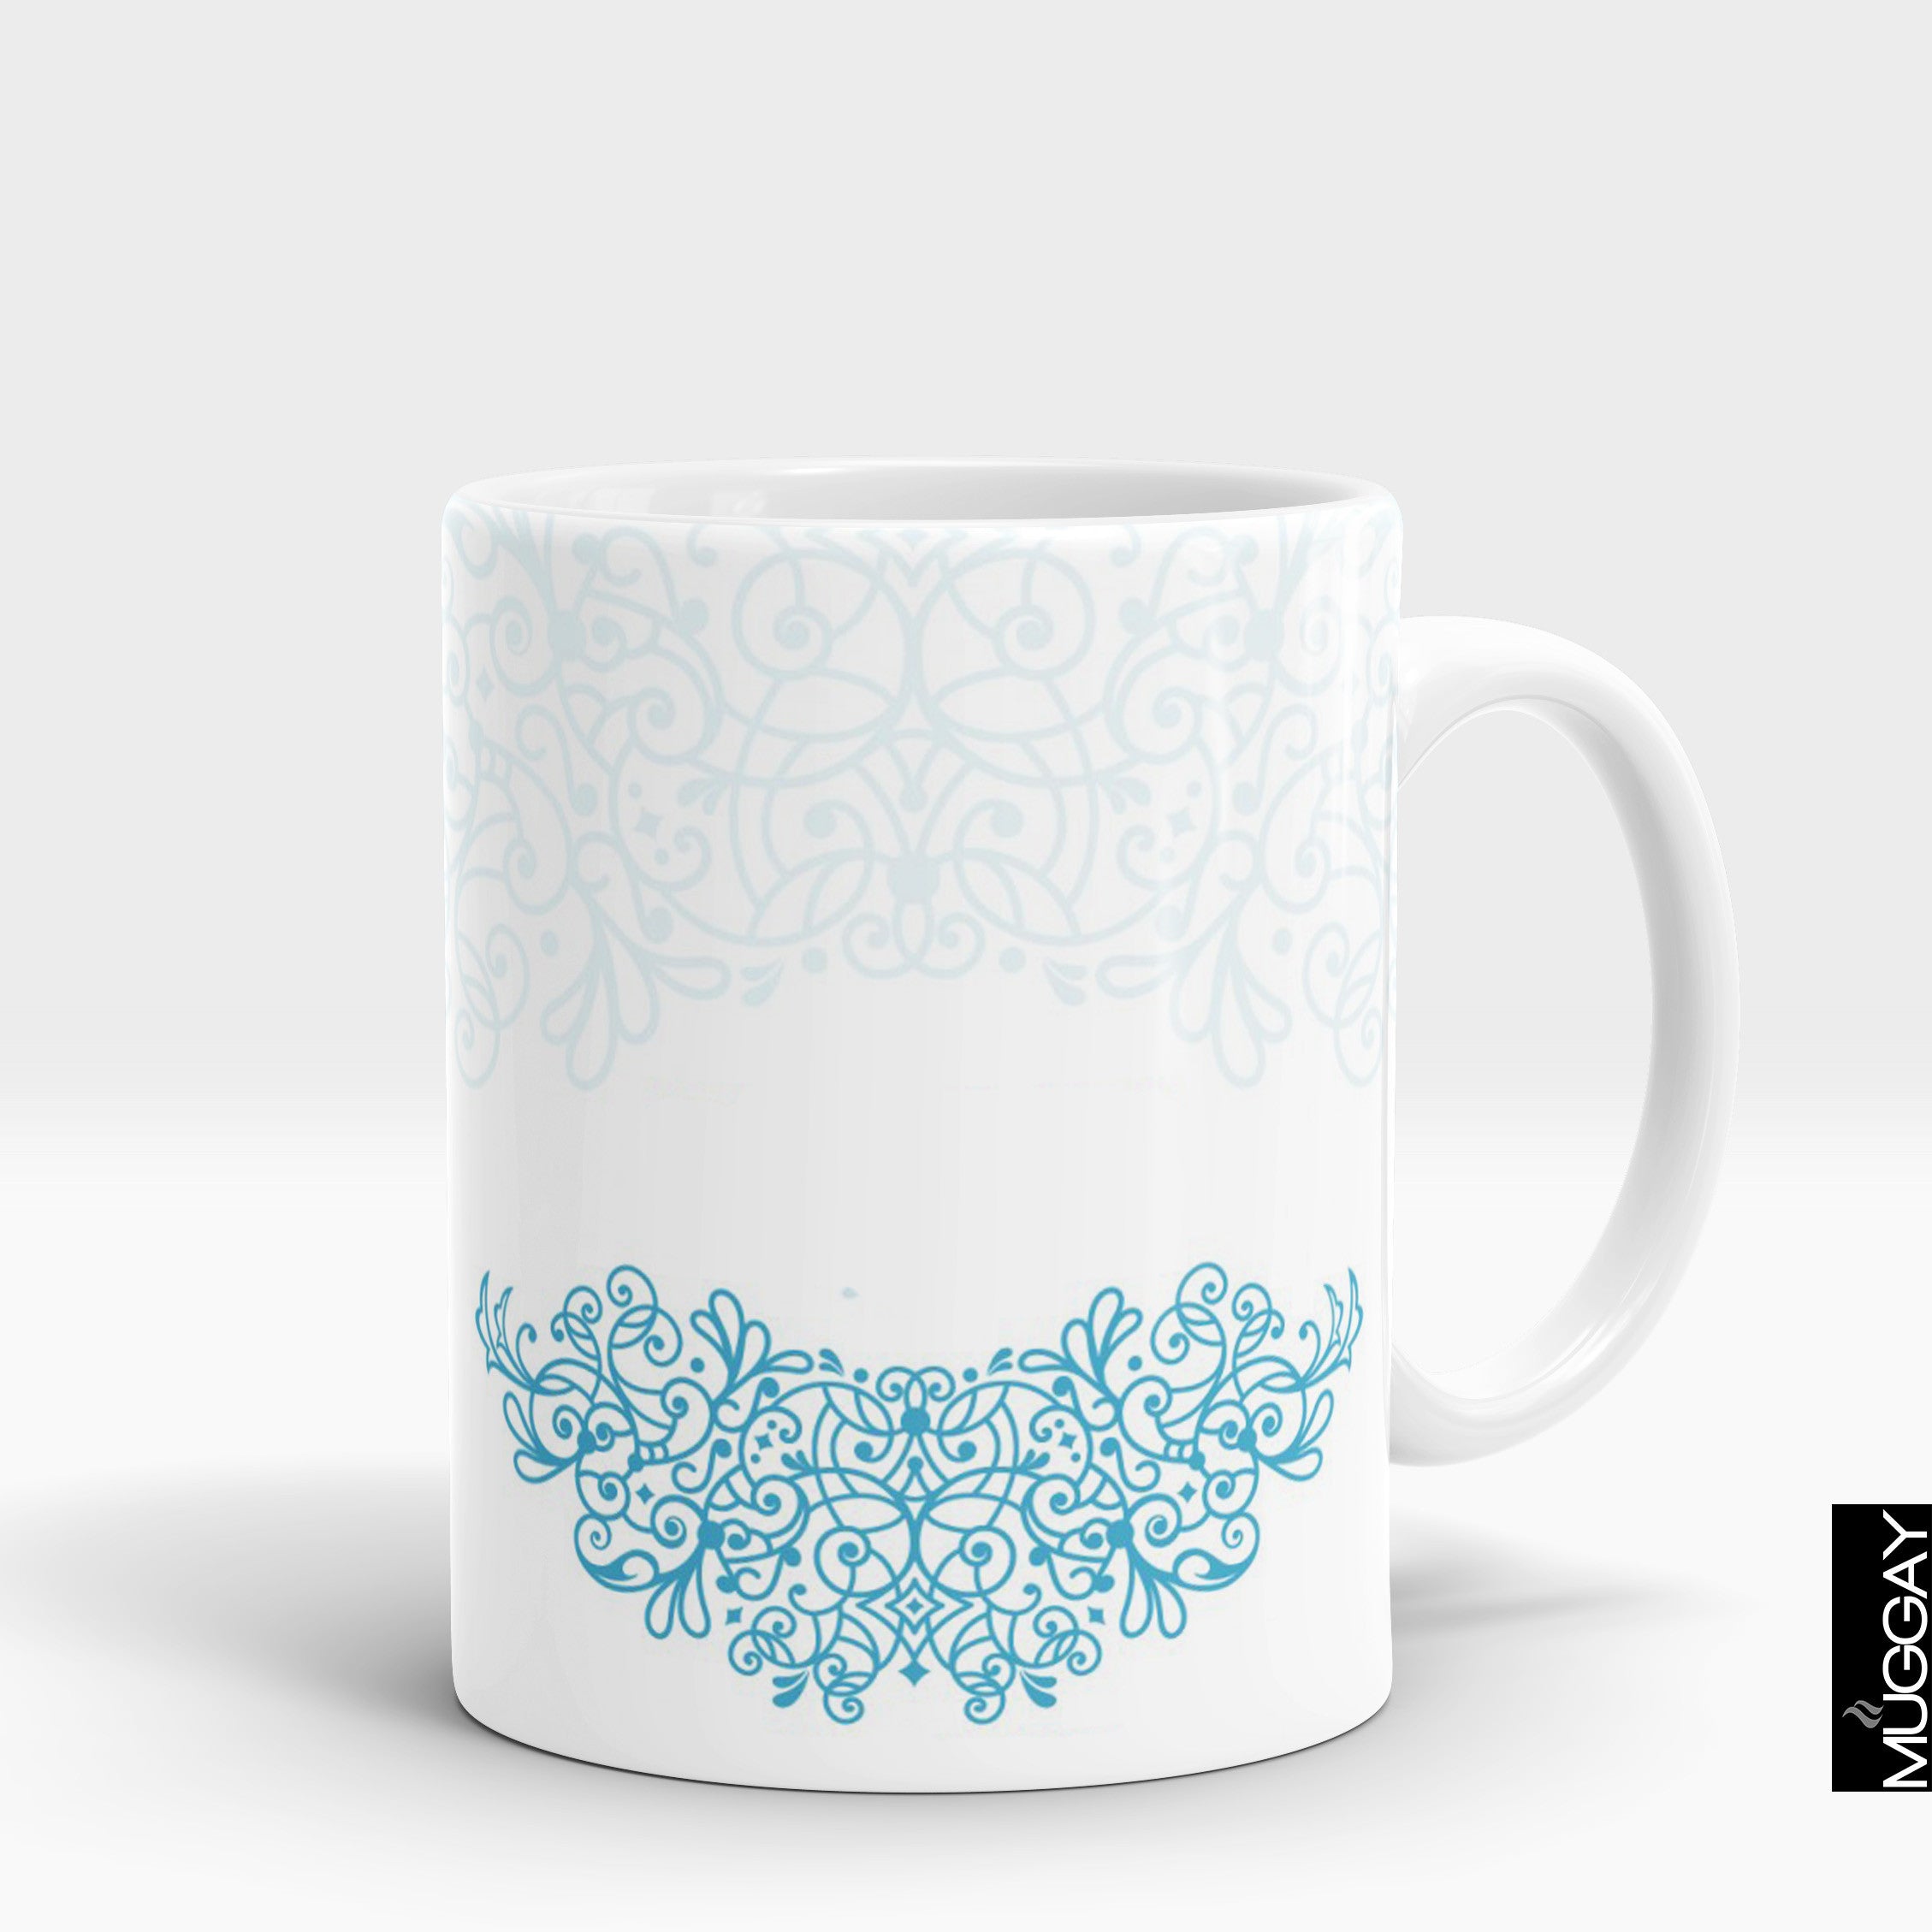 Mandala art mugs -17